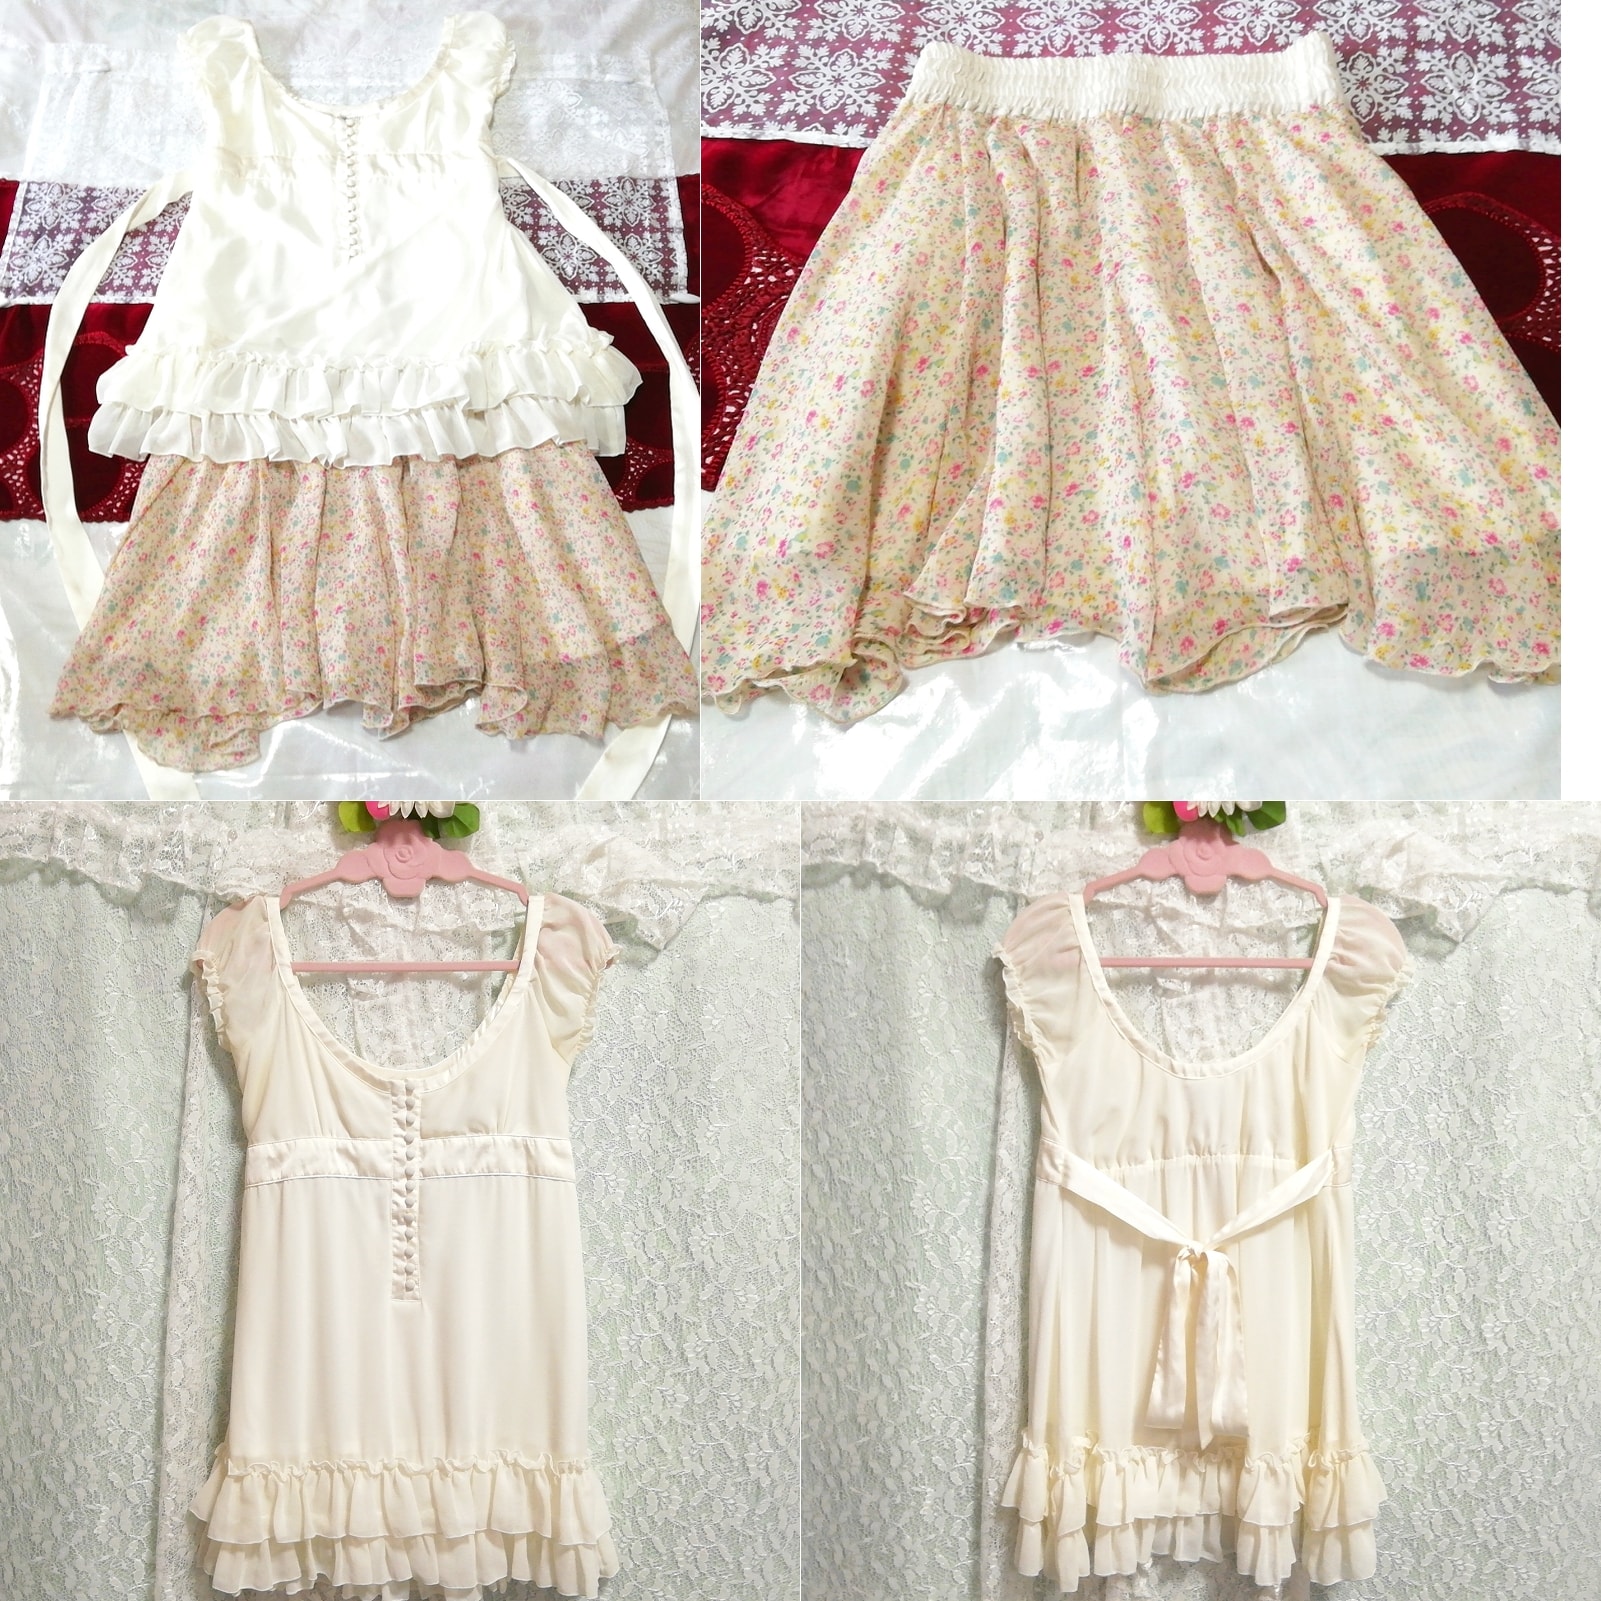 White chiffon sleeveless tunic negligee nightgown floral pattern chiffon skirt 2P, fashion, ladies' fashion, nightwear, pajamas